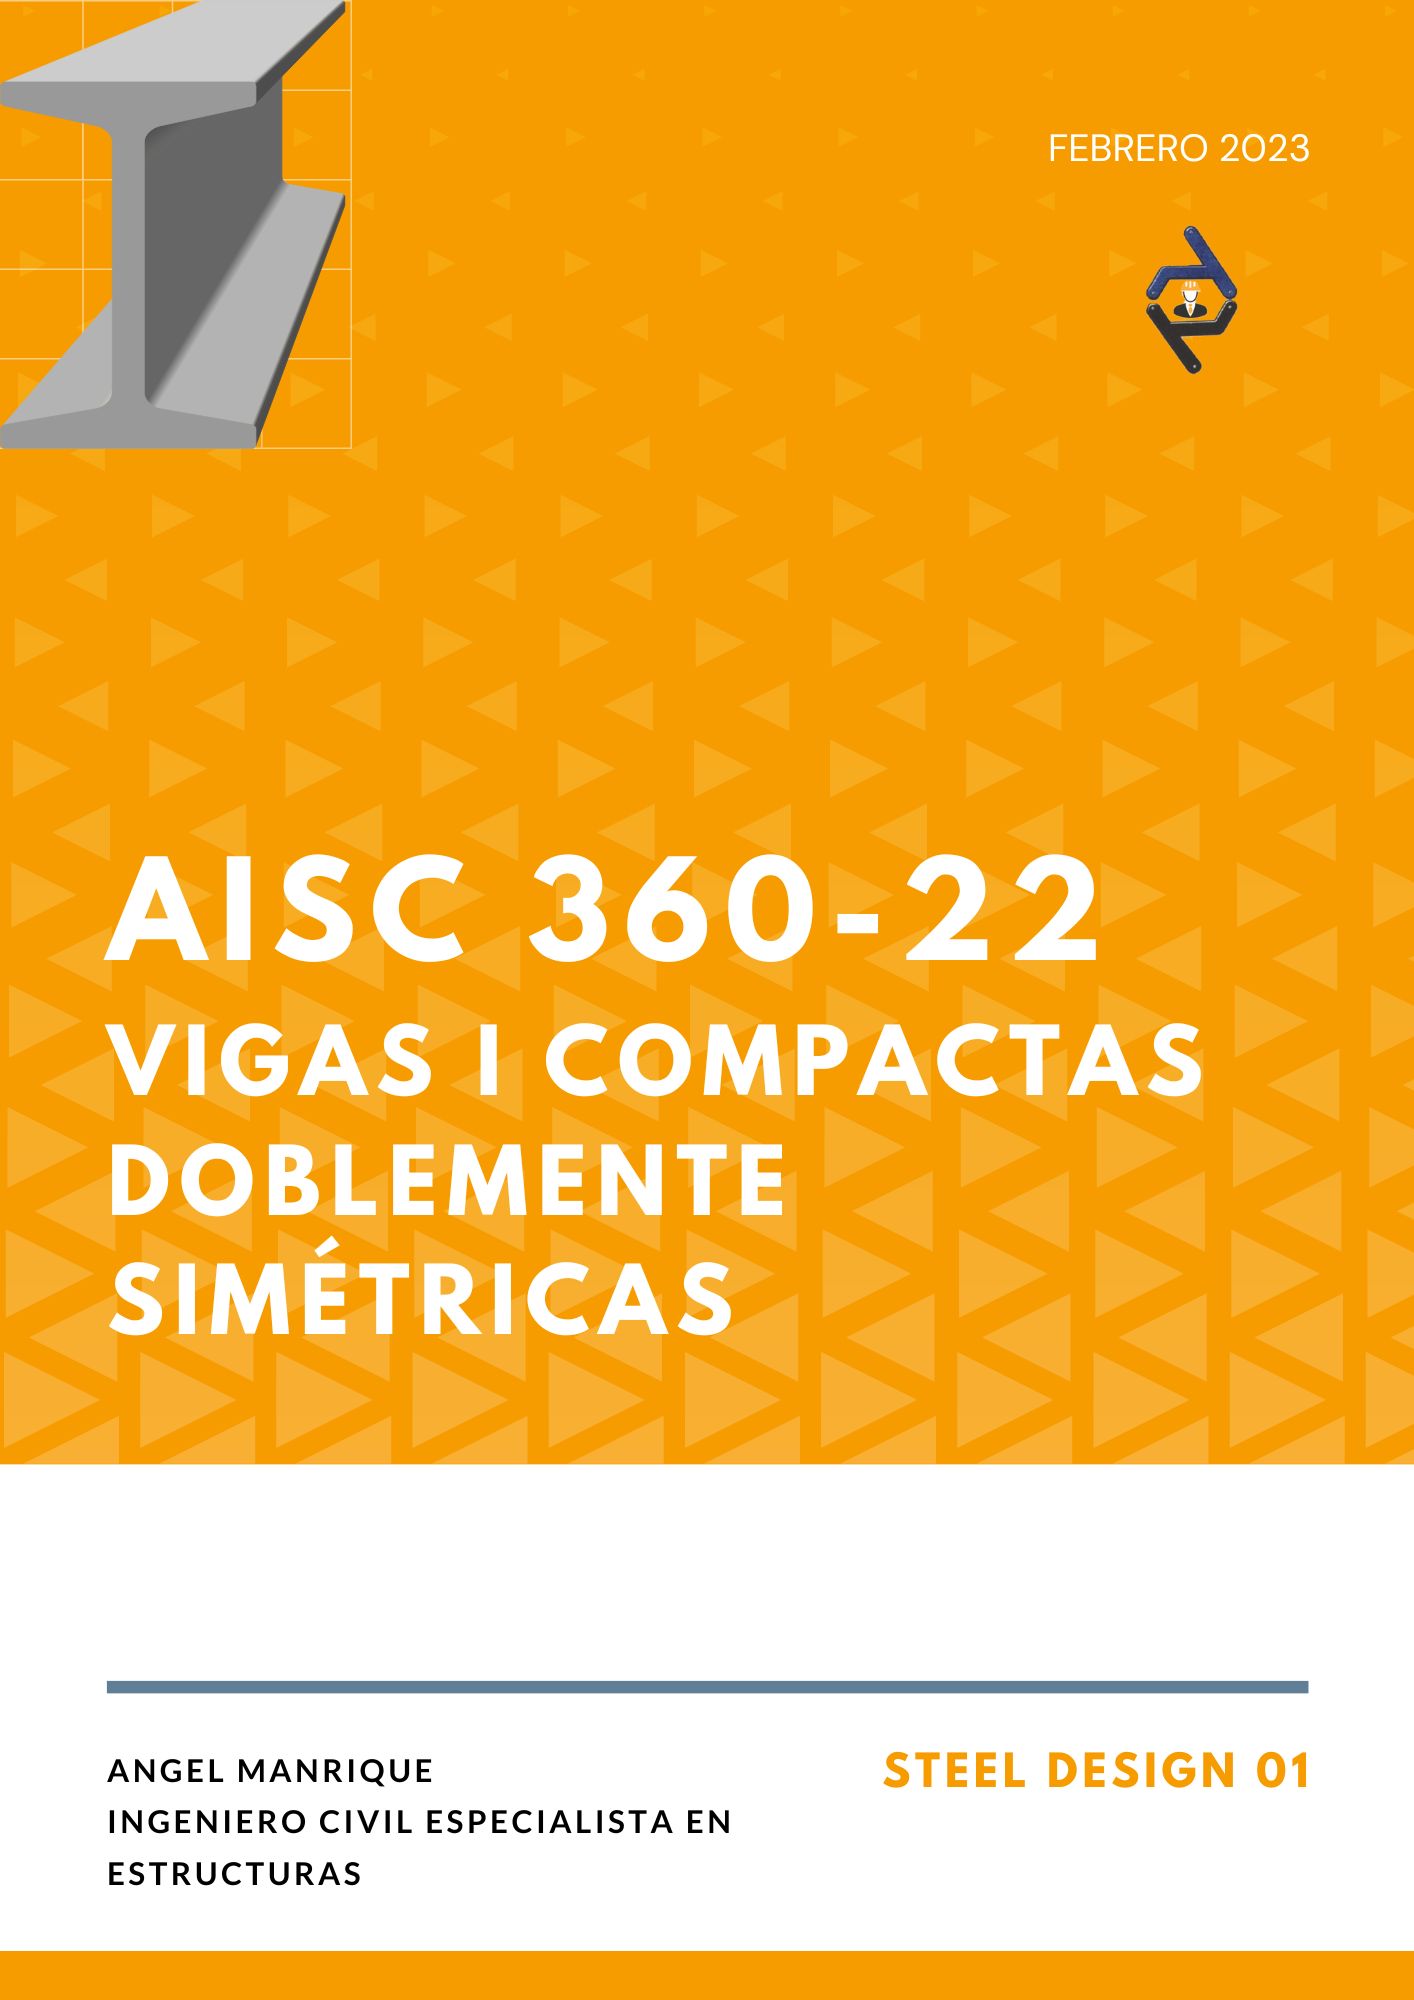 STEEL DESIGN 01. VIGAS I COMPACTAS DOBLEMENTE SIMÉTRICAS. AISC 360-22